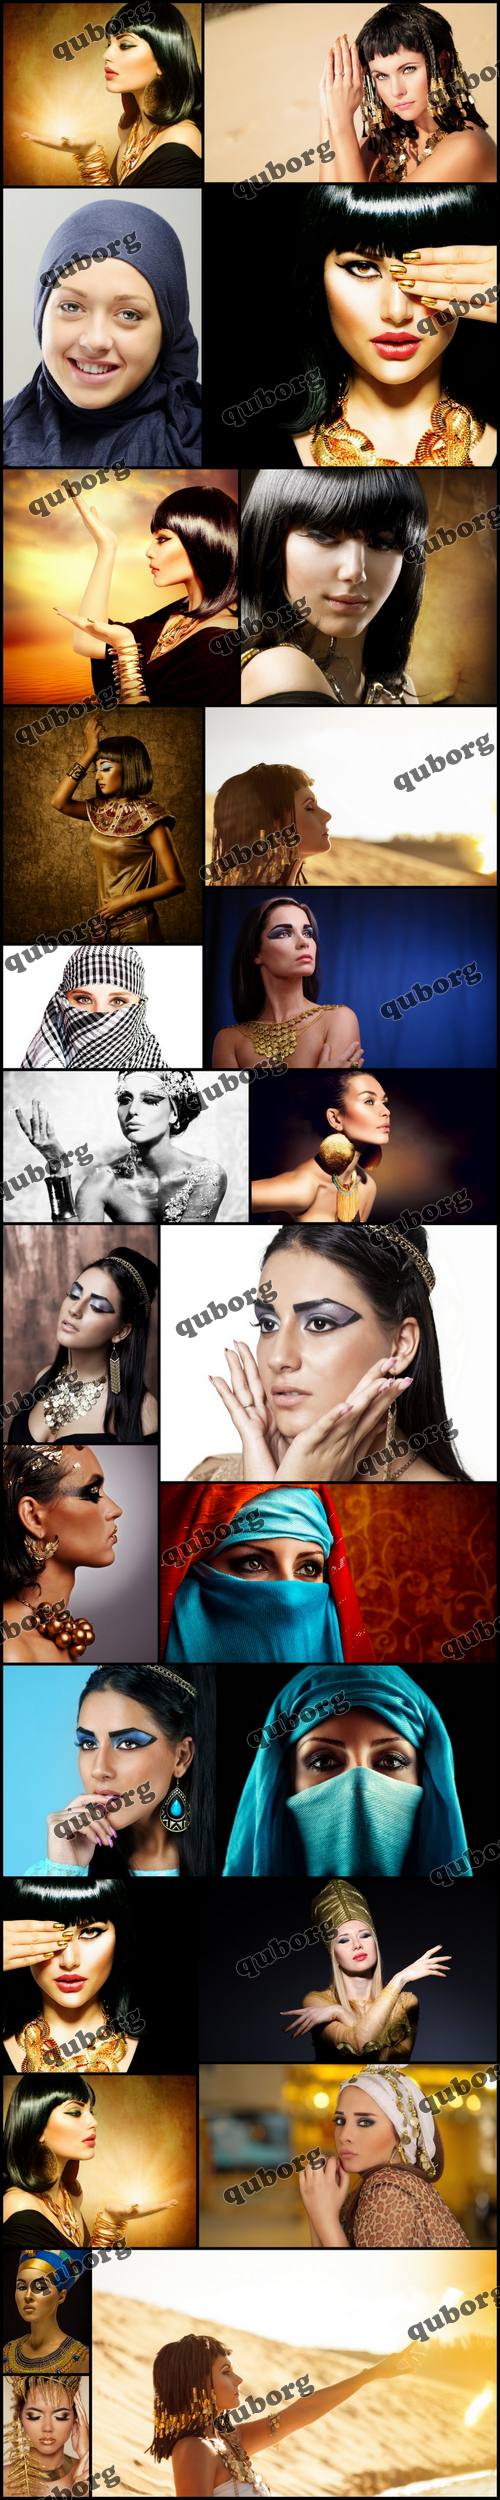 Stock Photos - Egypt Style Woman